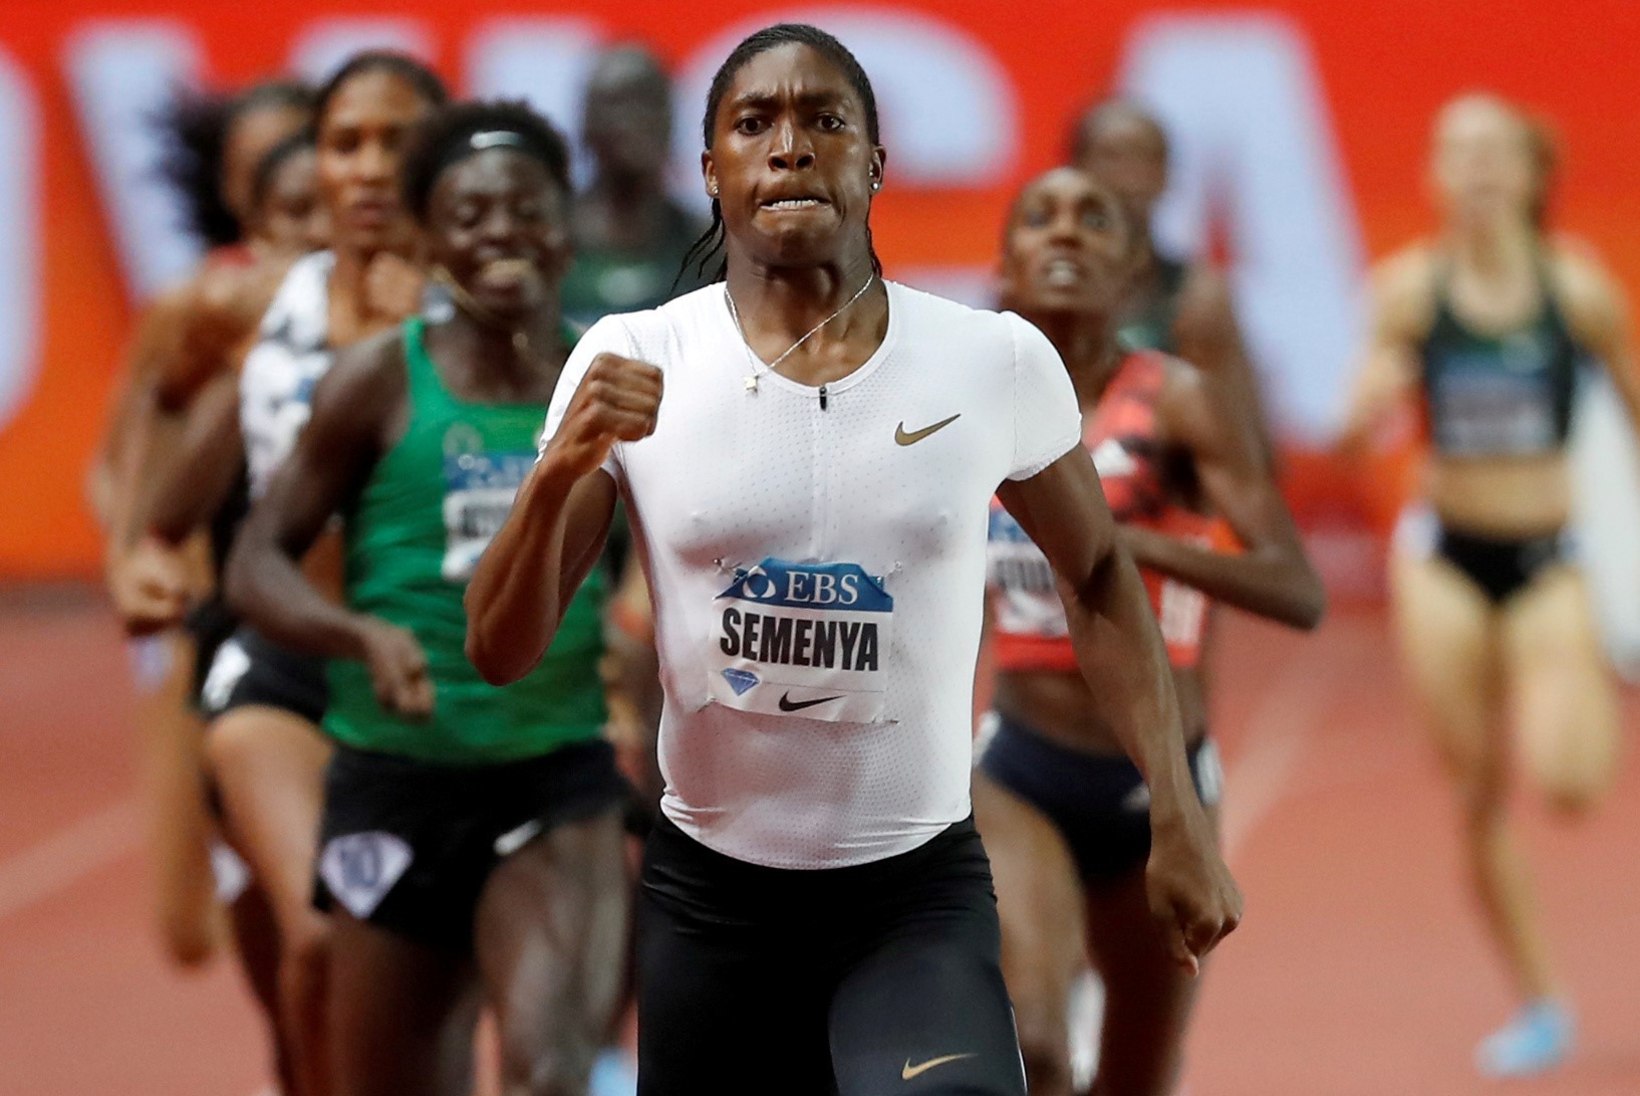 Esimest korda 400 m jooksu proovinud Semenya püstitas kohe rahvusrekordi